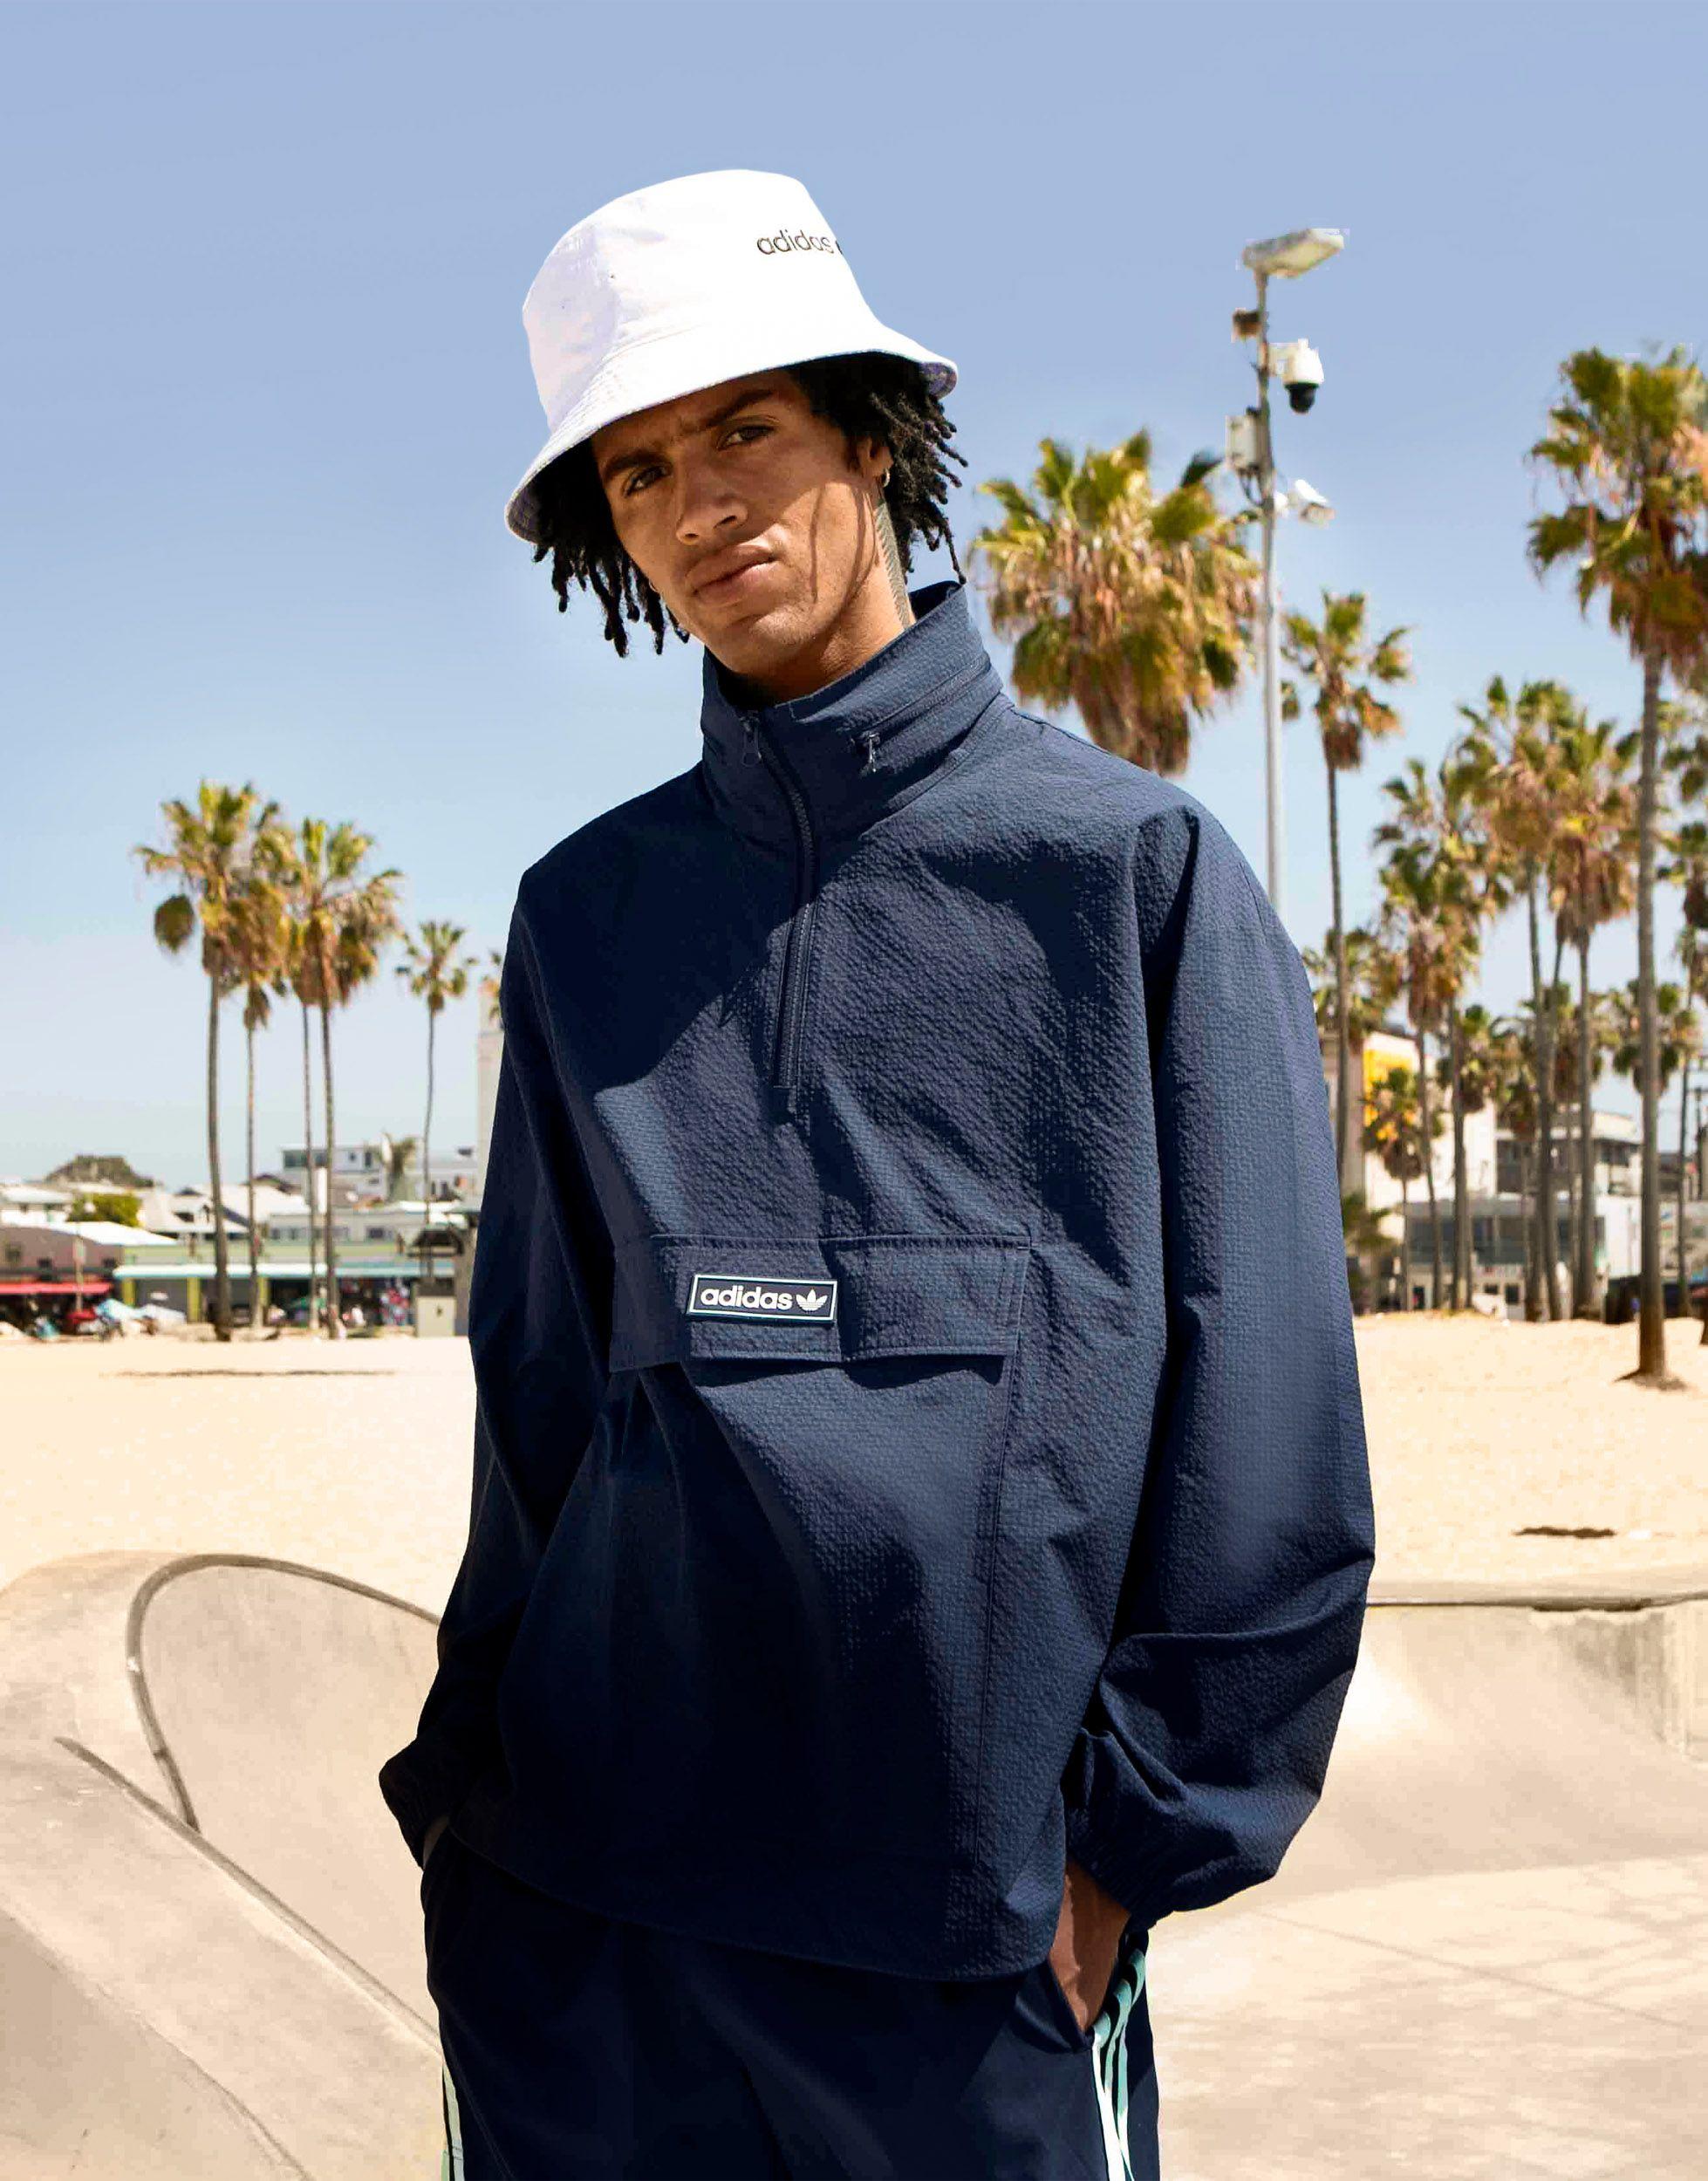 adidas Originals 'summer Club' Quarter Zip Seersucker Windbreaker Jacket in  Blue for Men